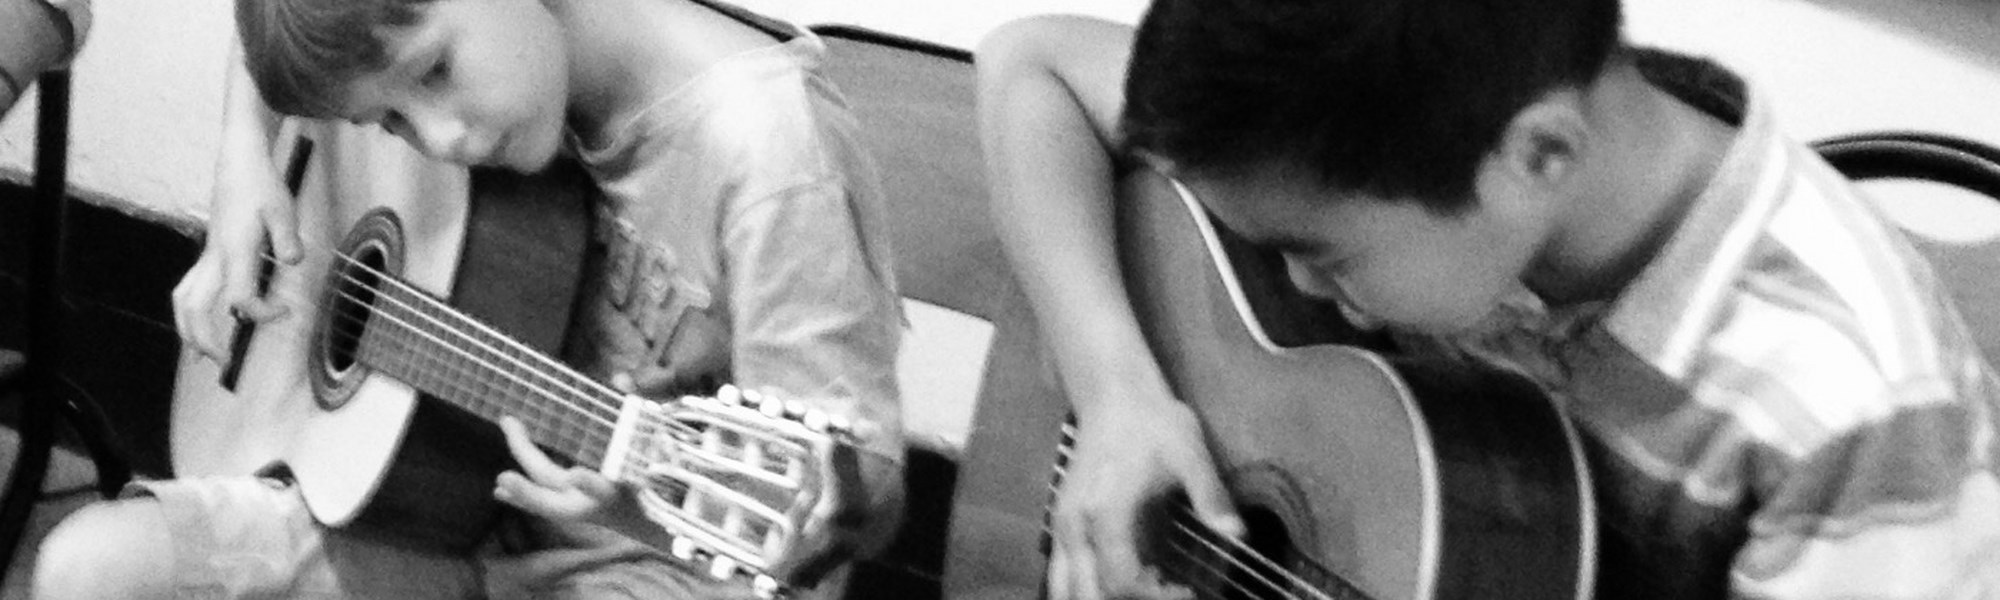 Cours de guitare enfant à Liège, à Ans, à Andenne